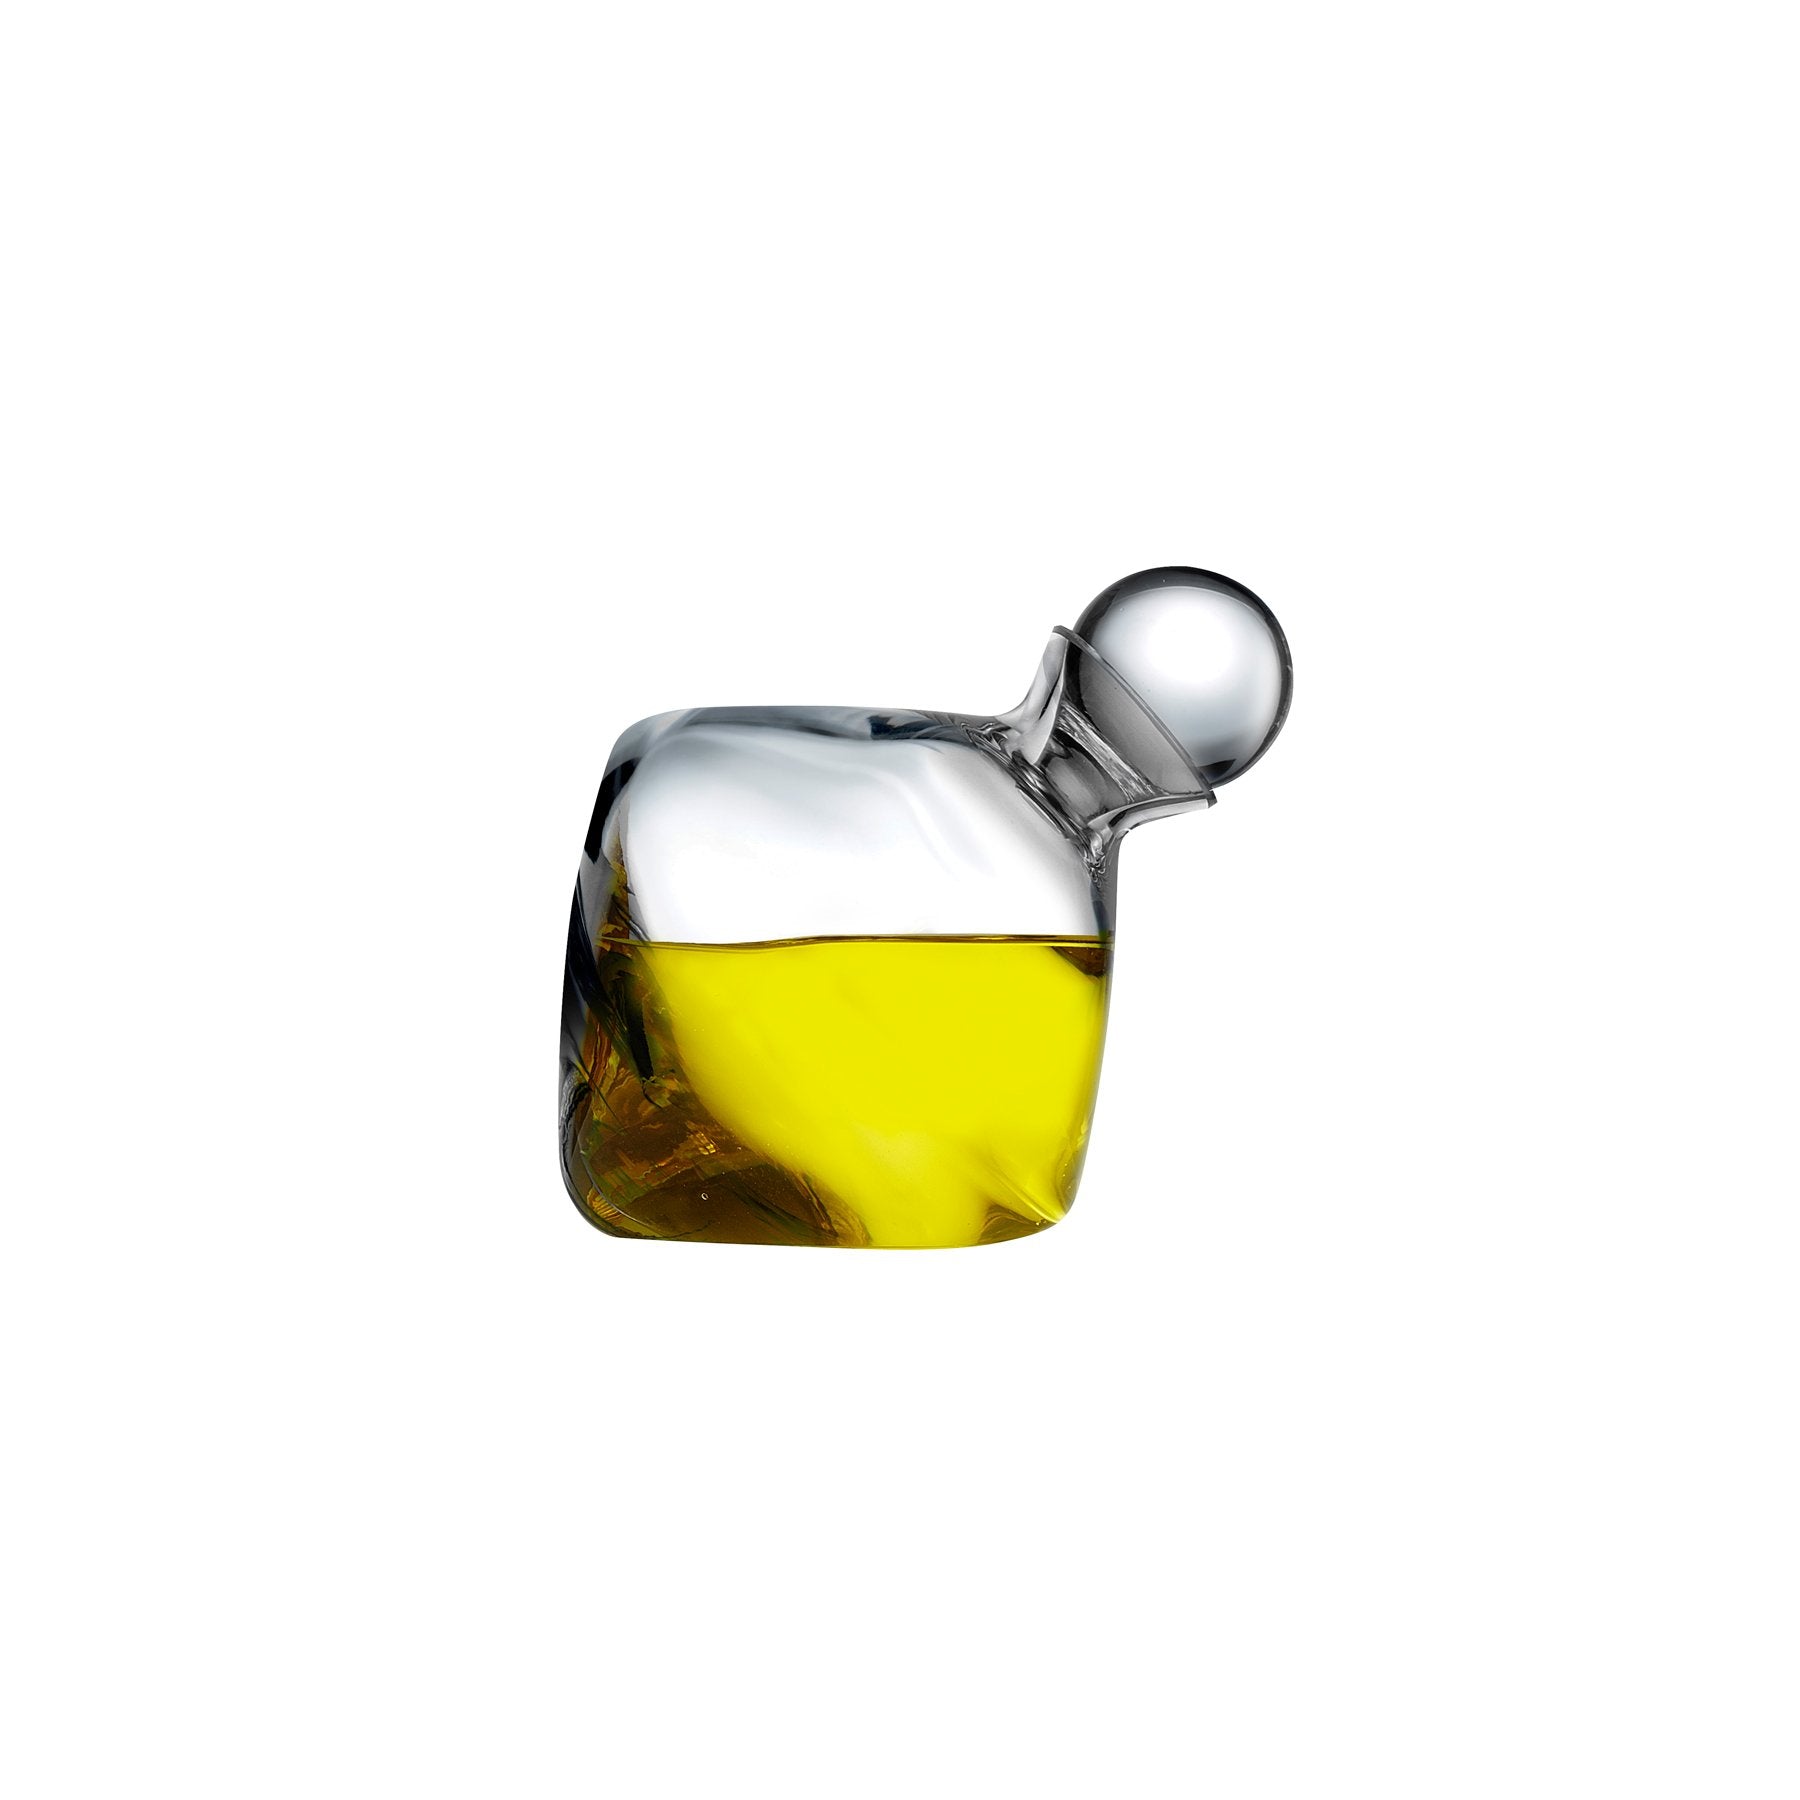 Olea Oil and Vinegar Bottle